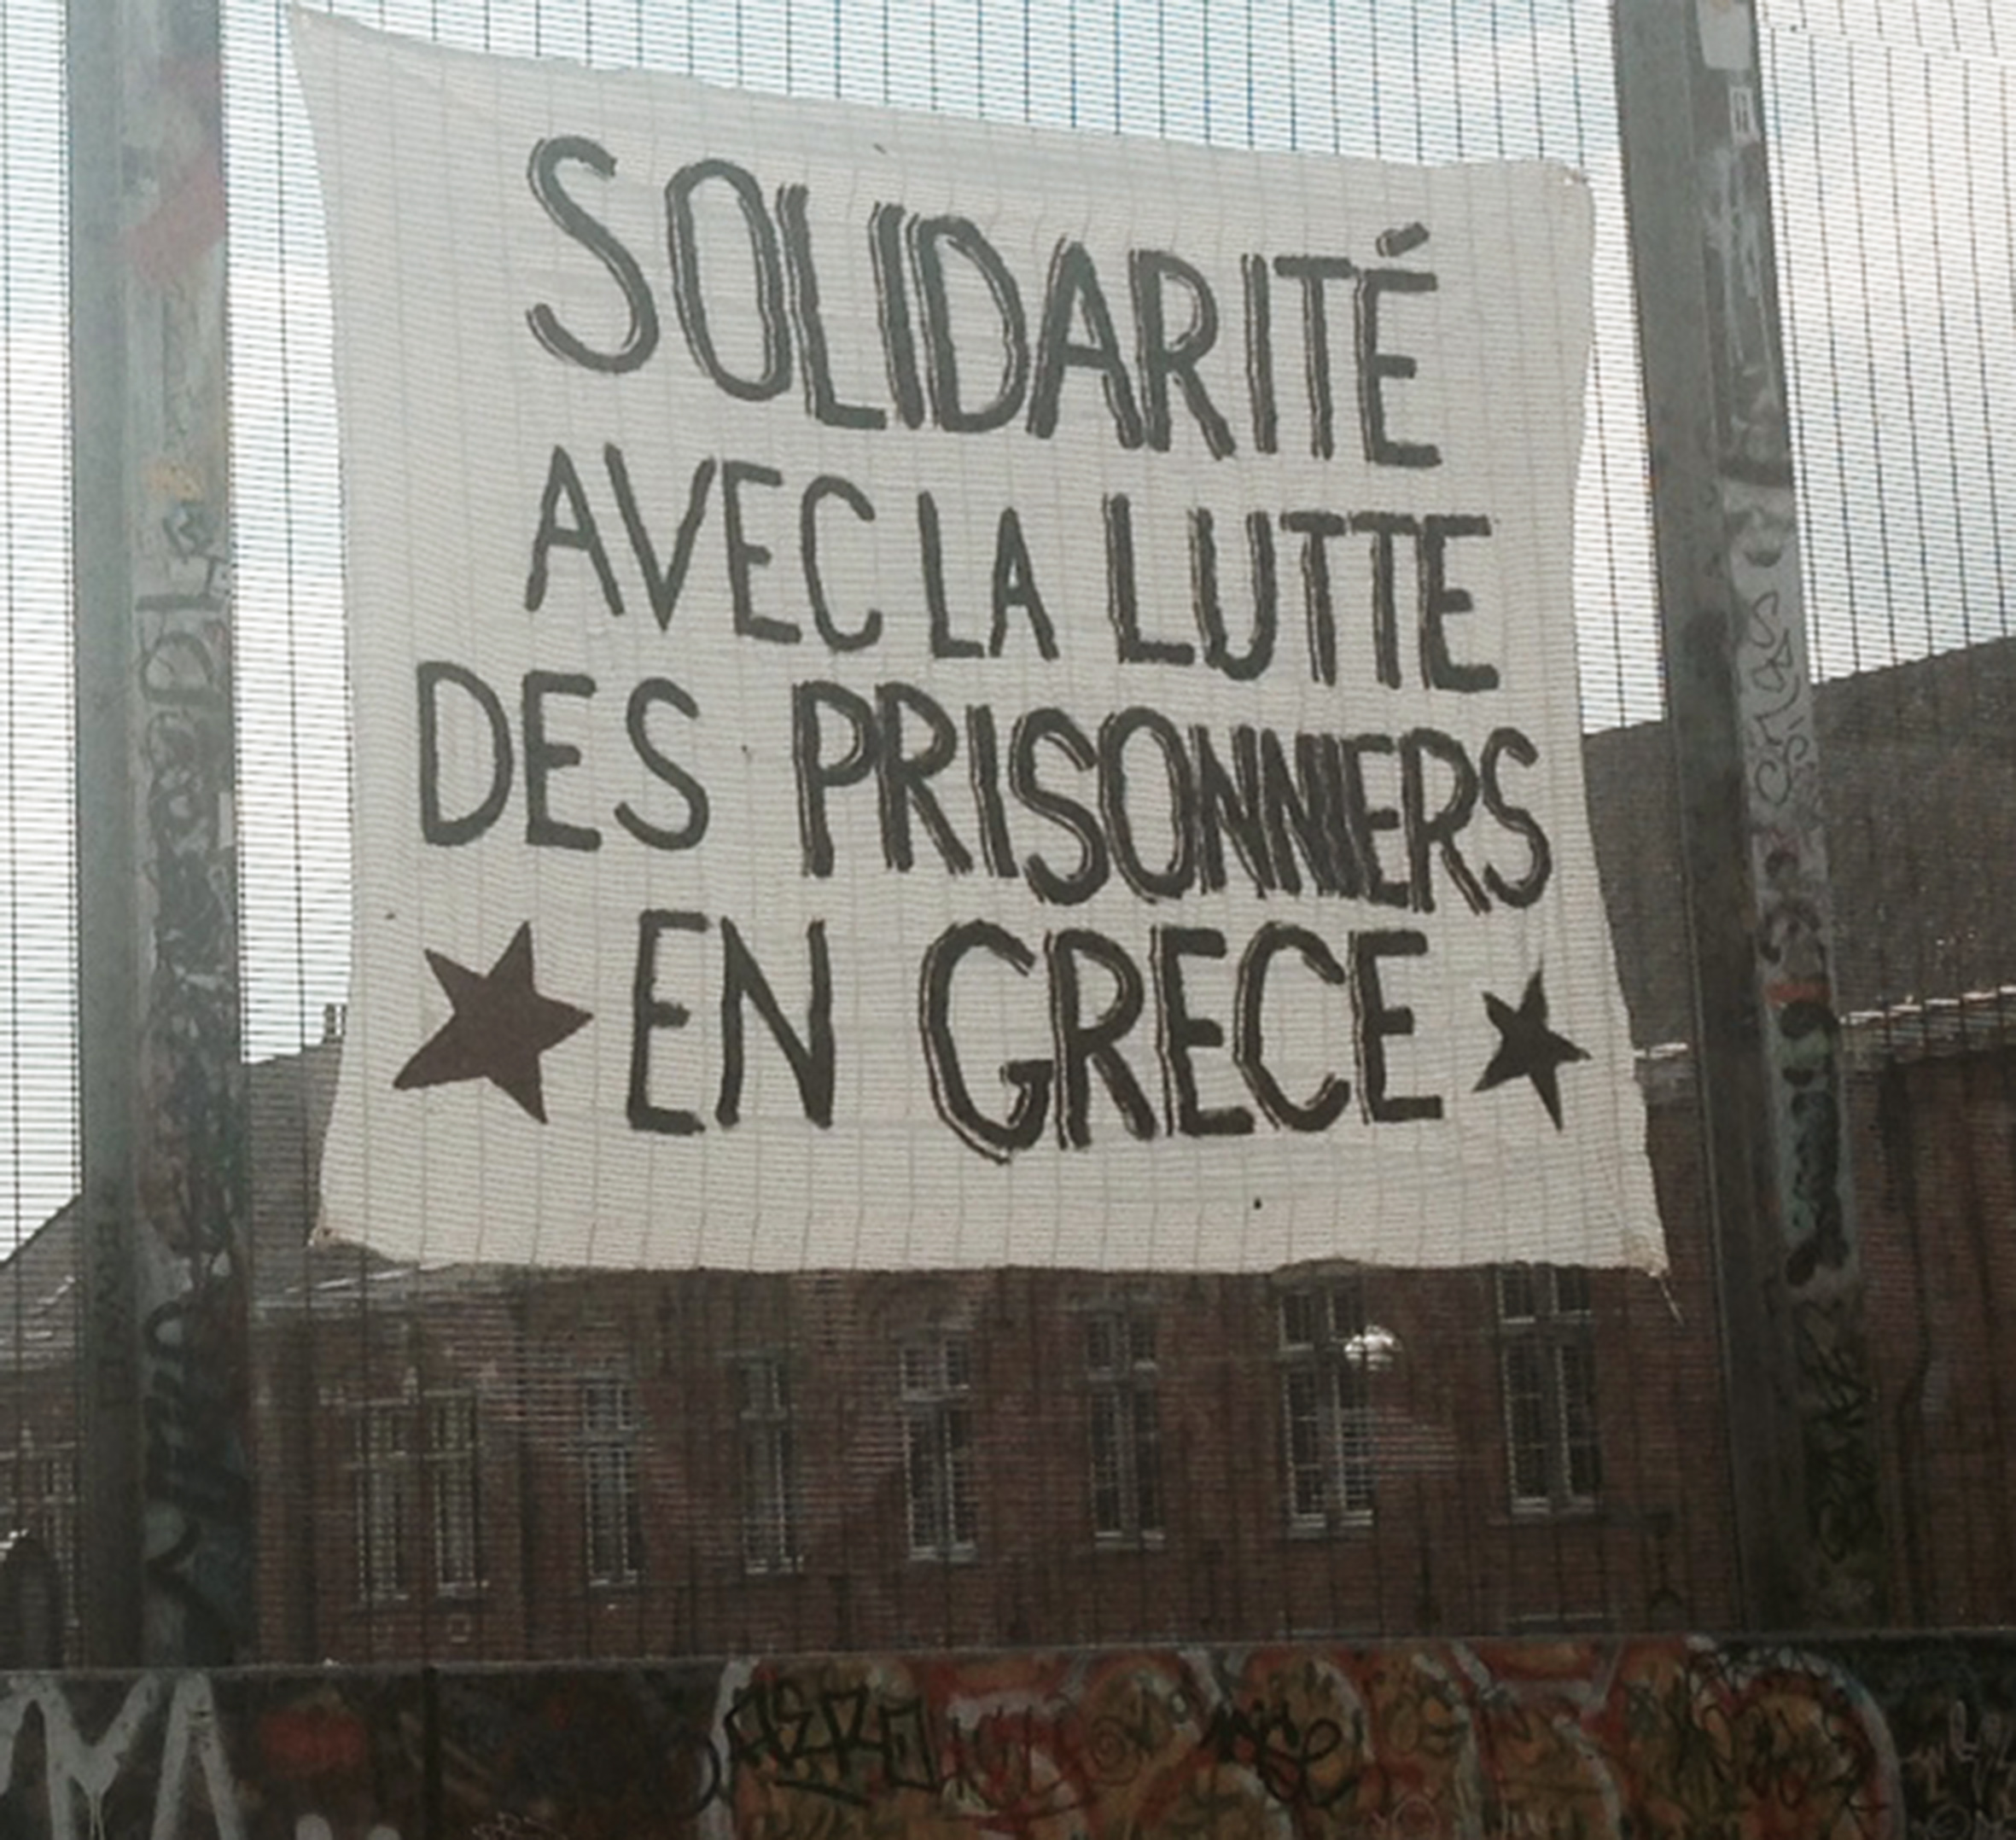 Βρυξέλλες, Βέλγιο: Αλληλεγγύη στον αγώνα των φυλακισμένων στήν Ελλάδα